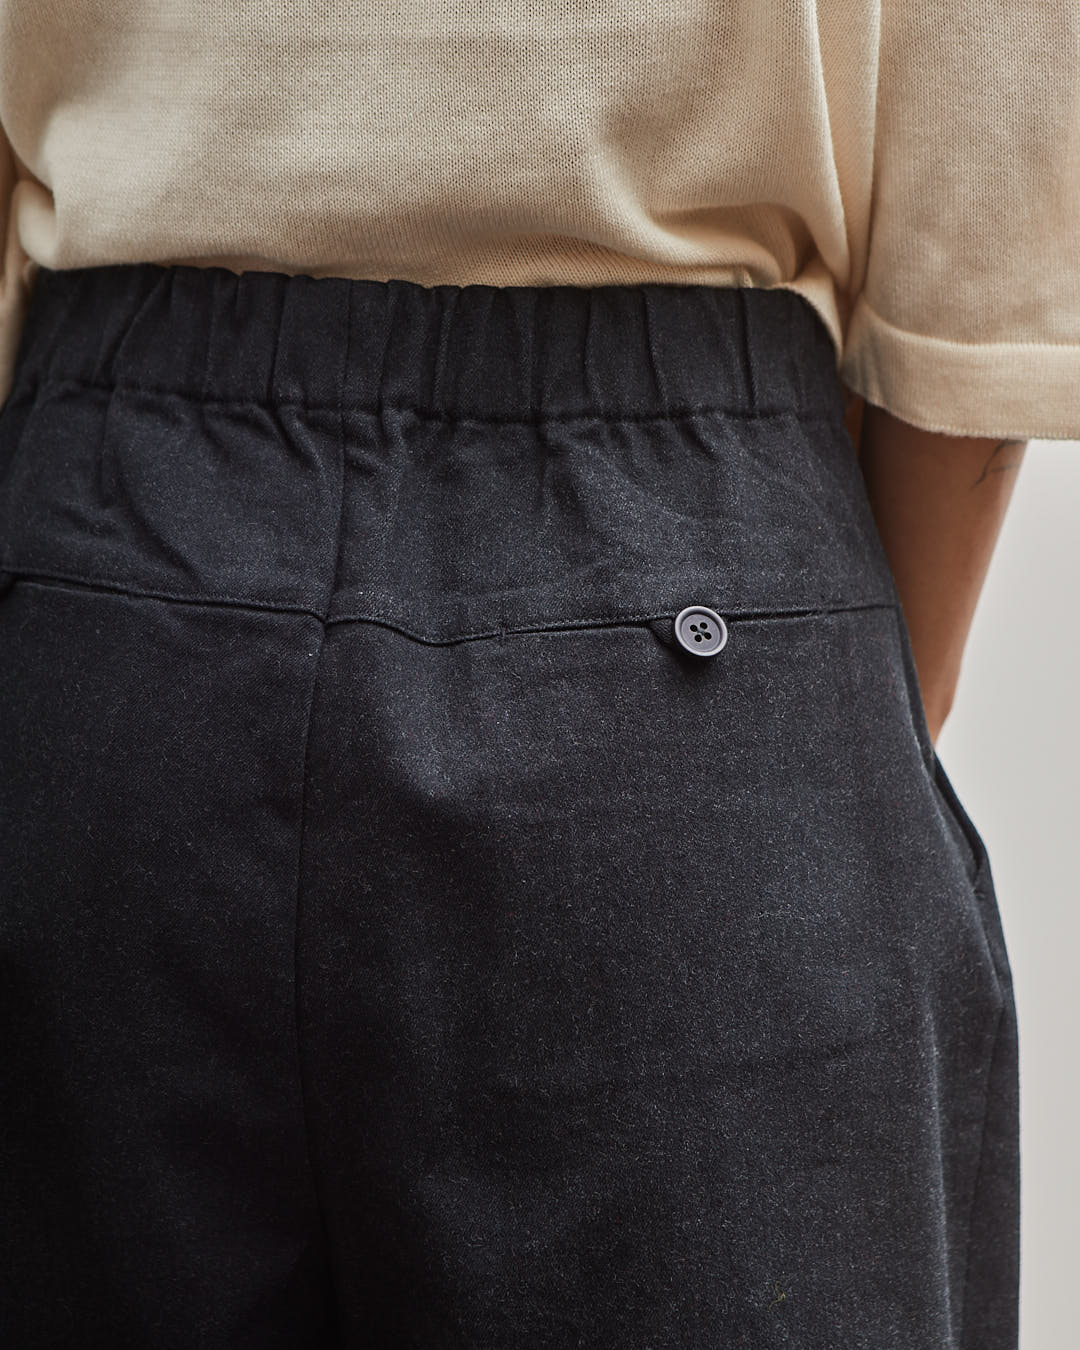 detail, back pocket & waitband